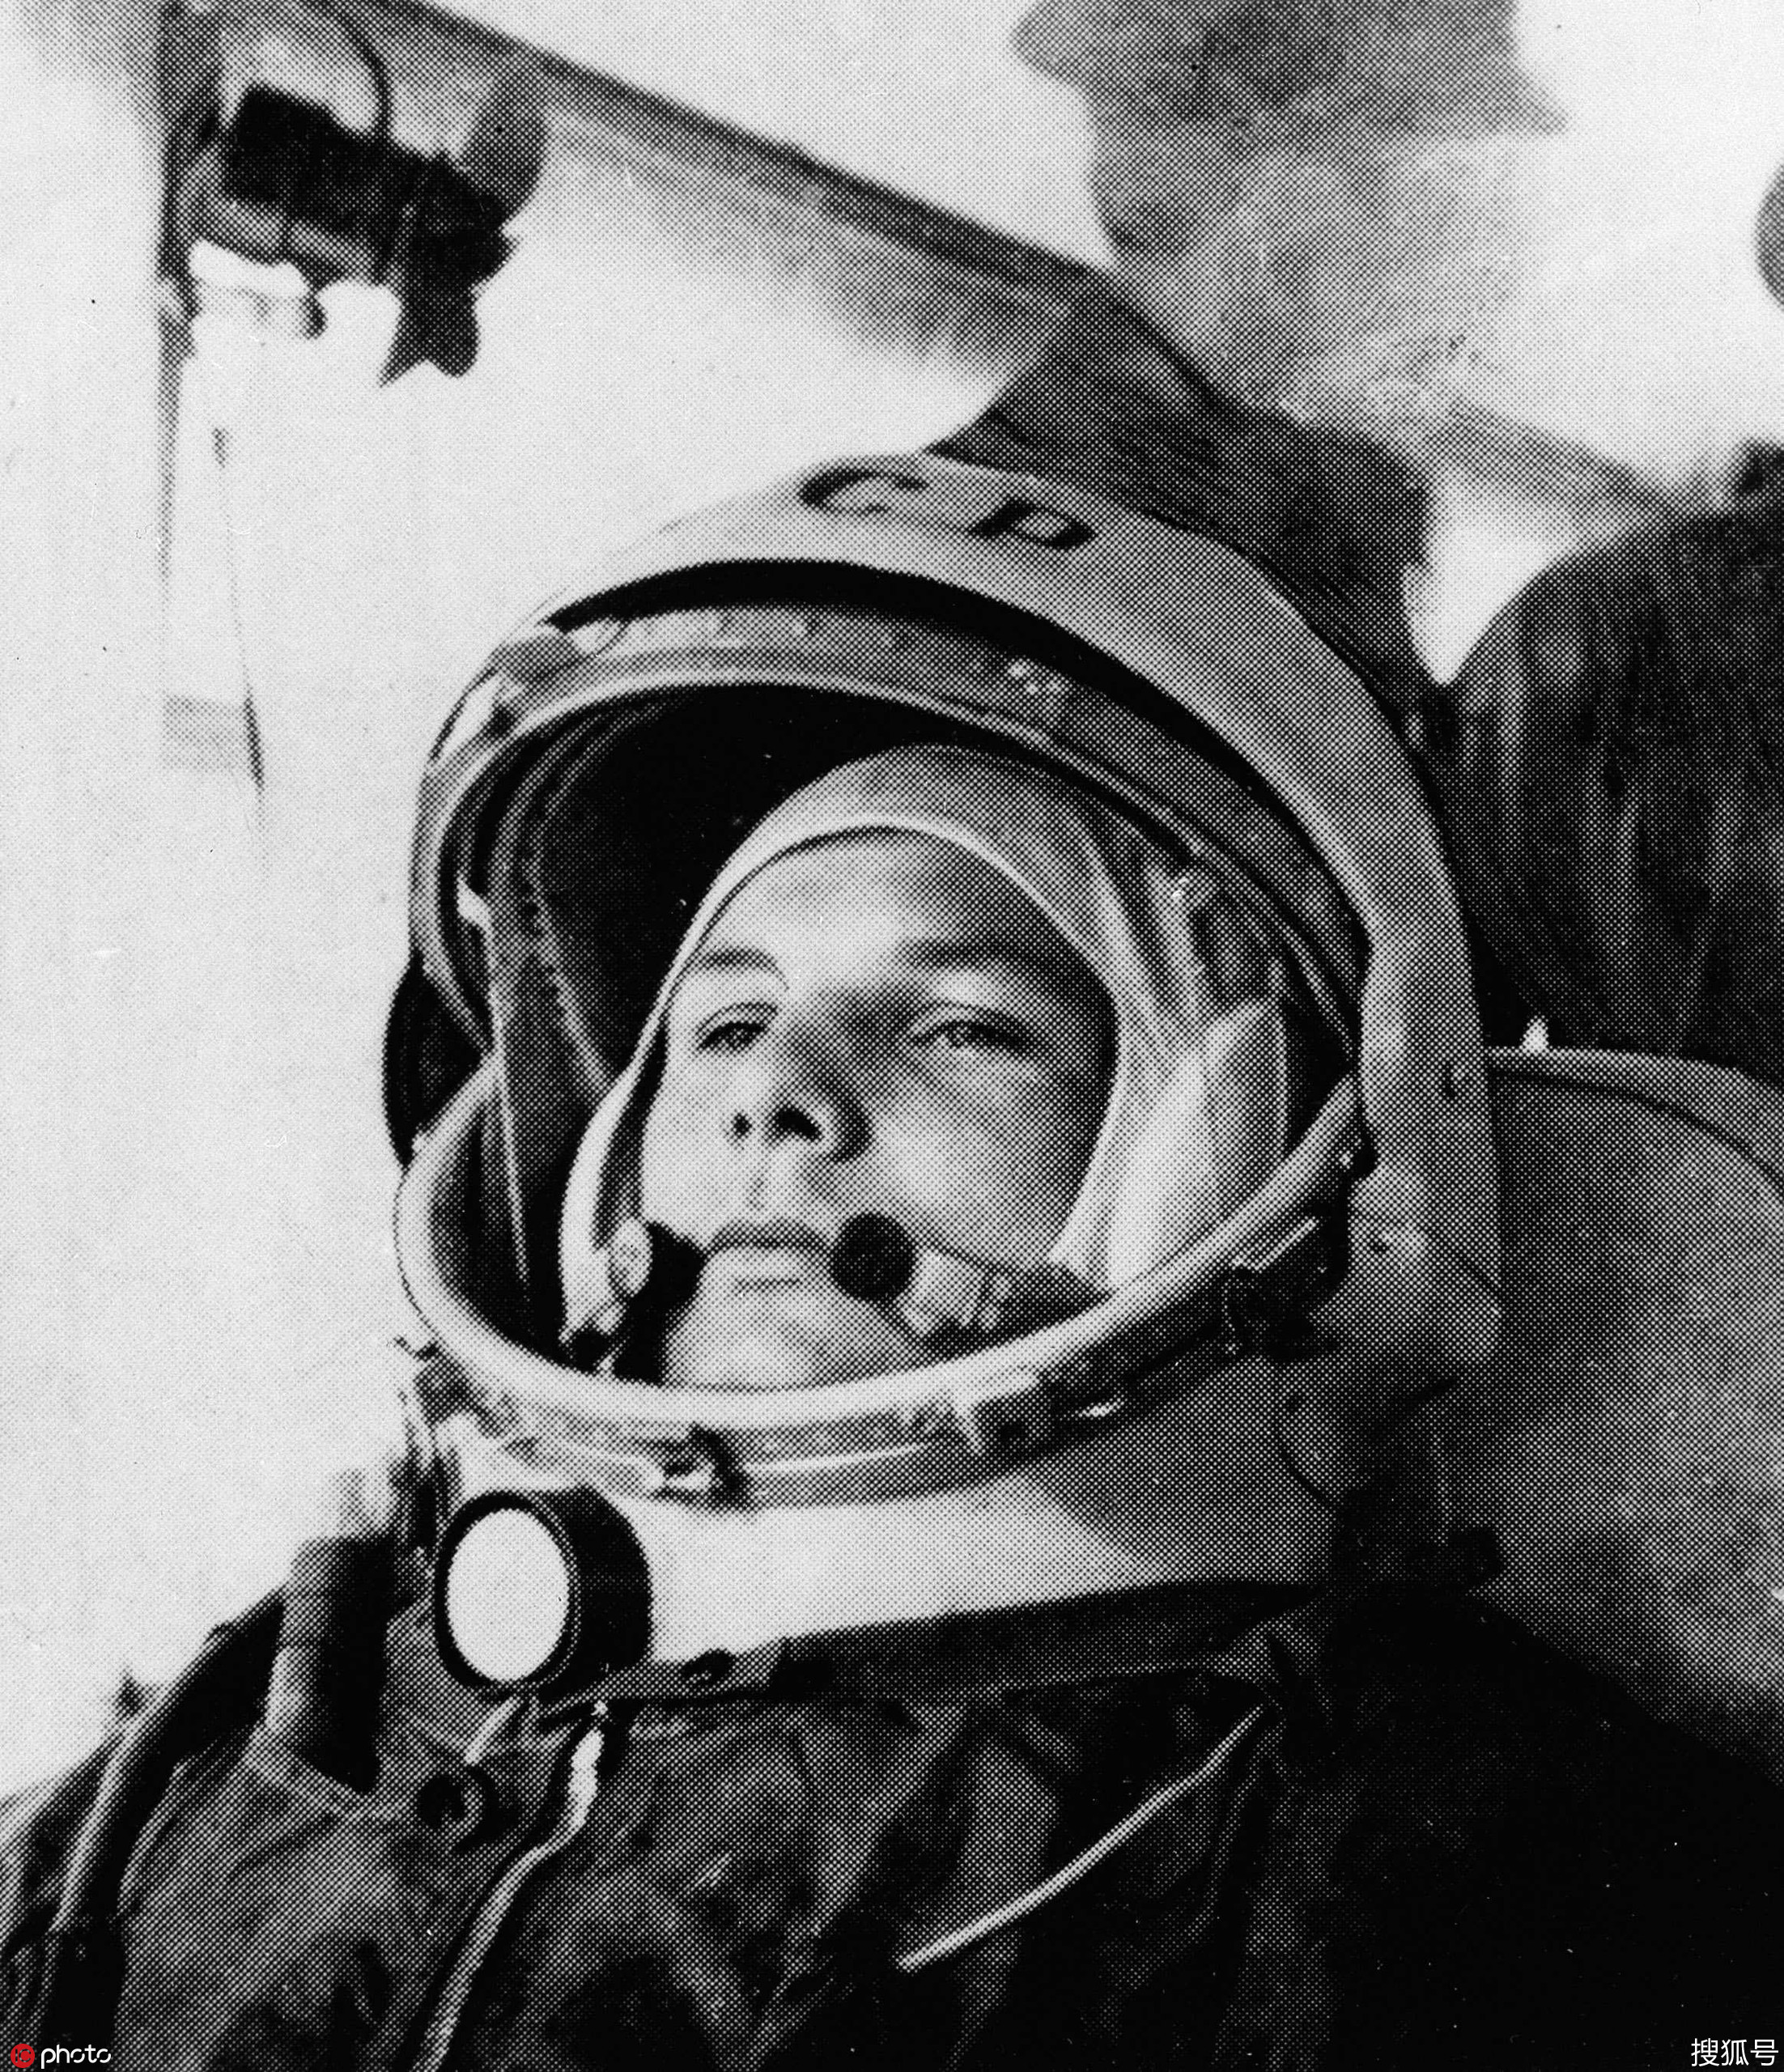 他是前苏联的太空英雄却死于训练中的意外事故